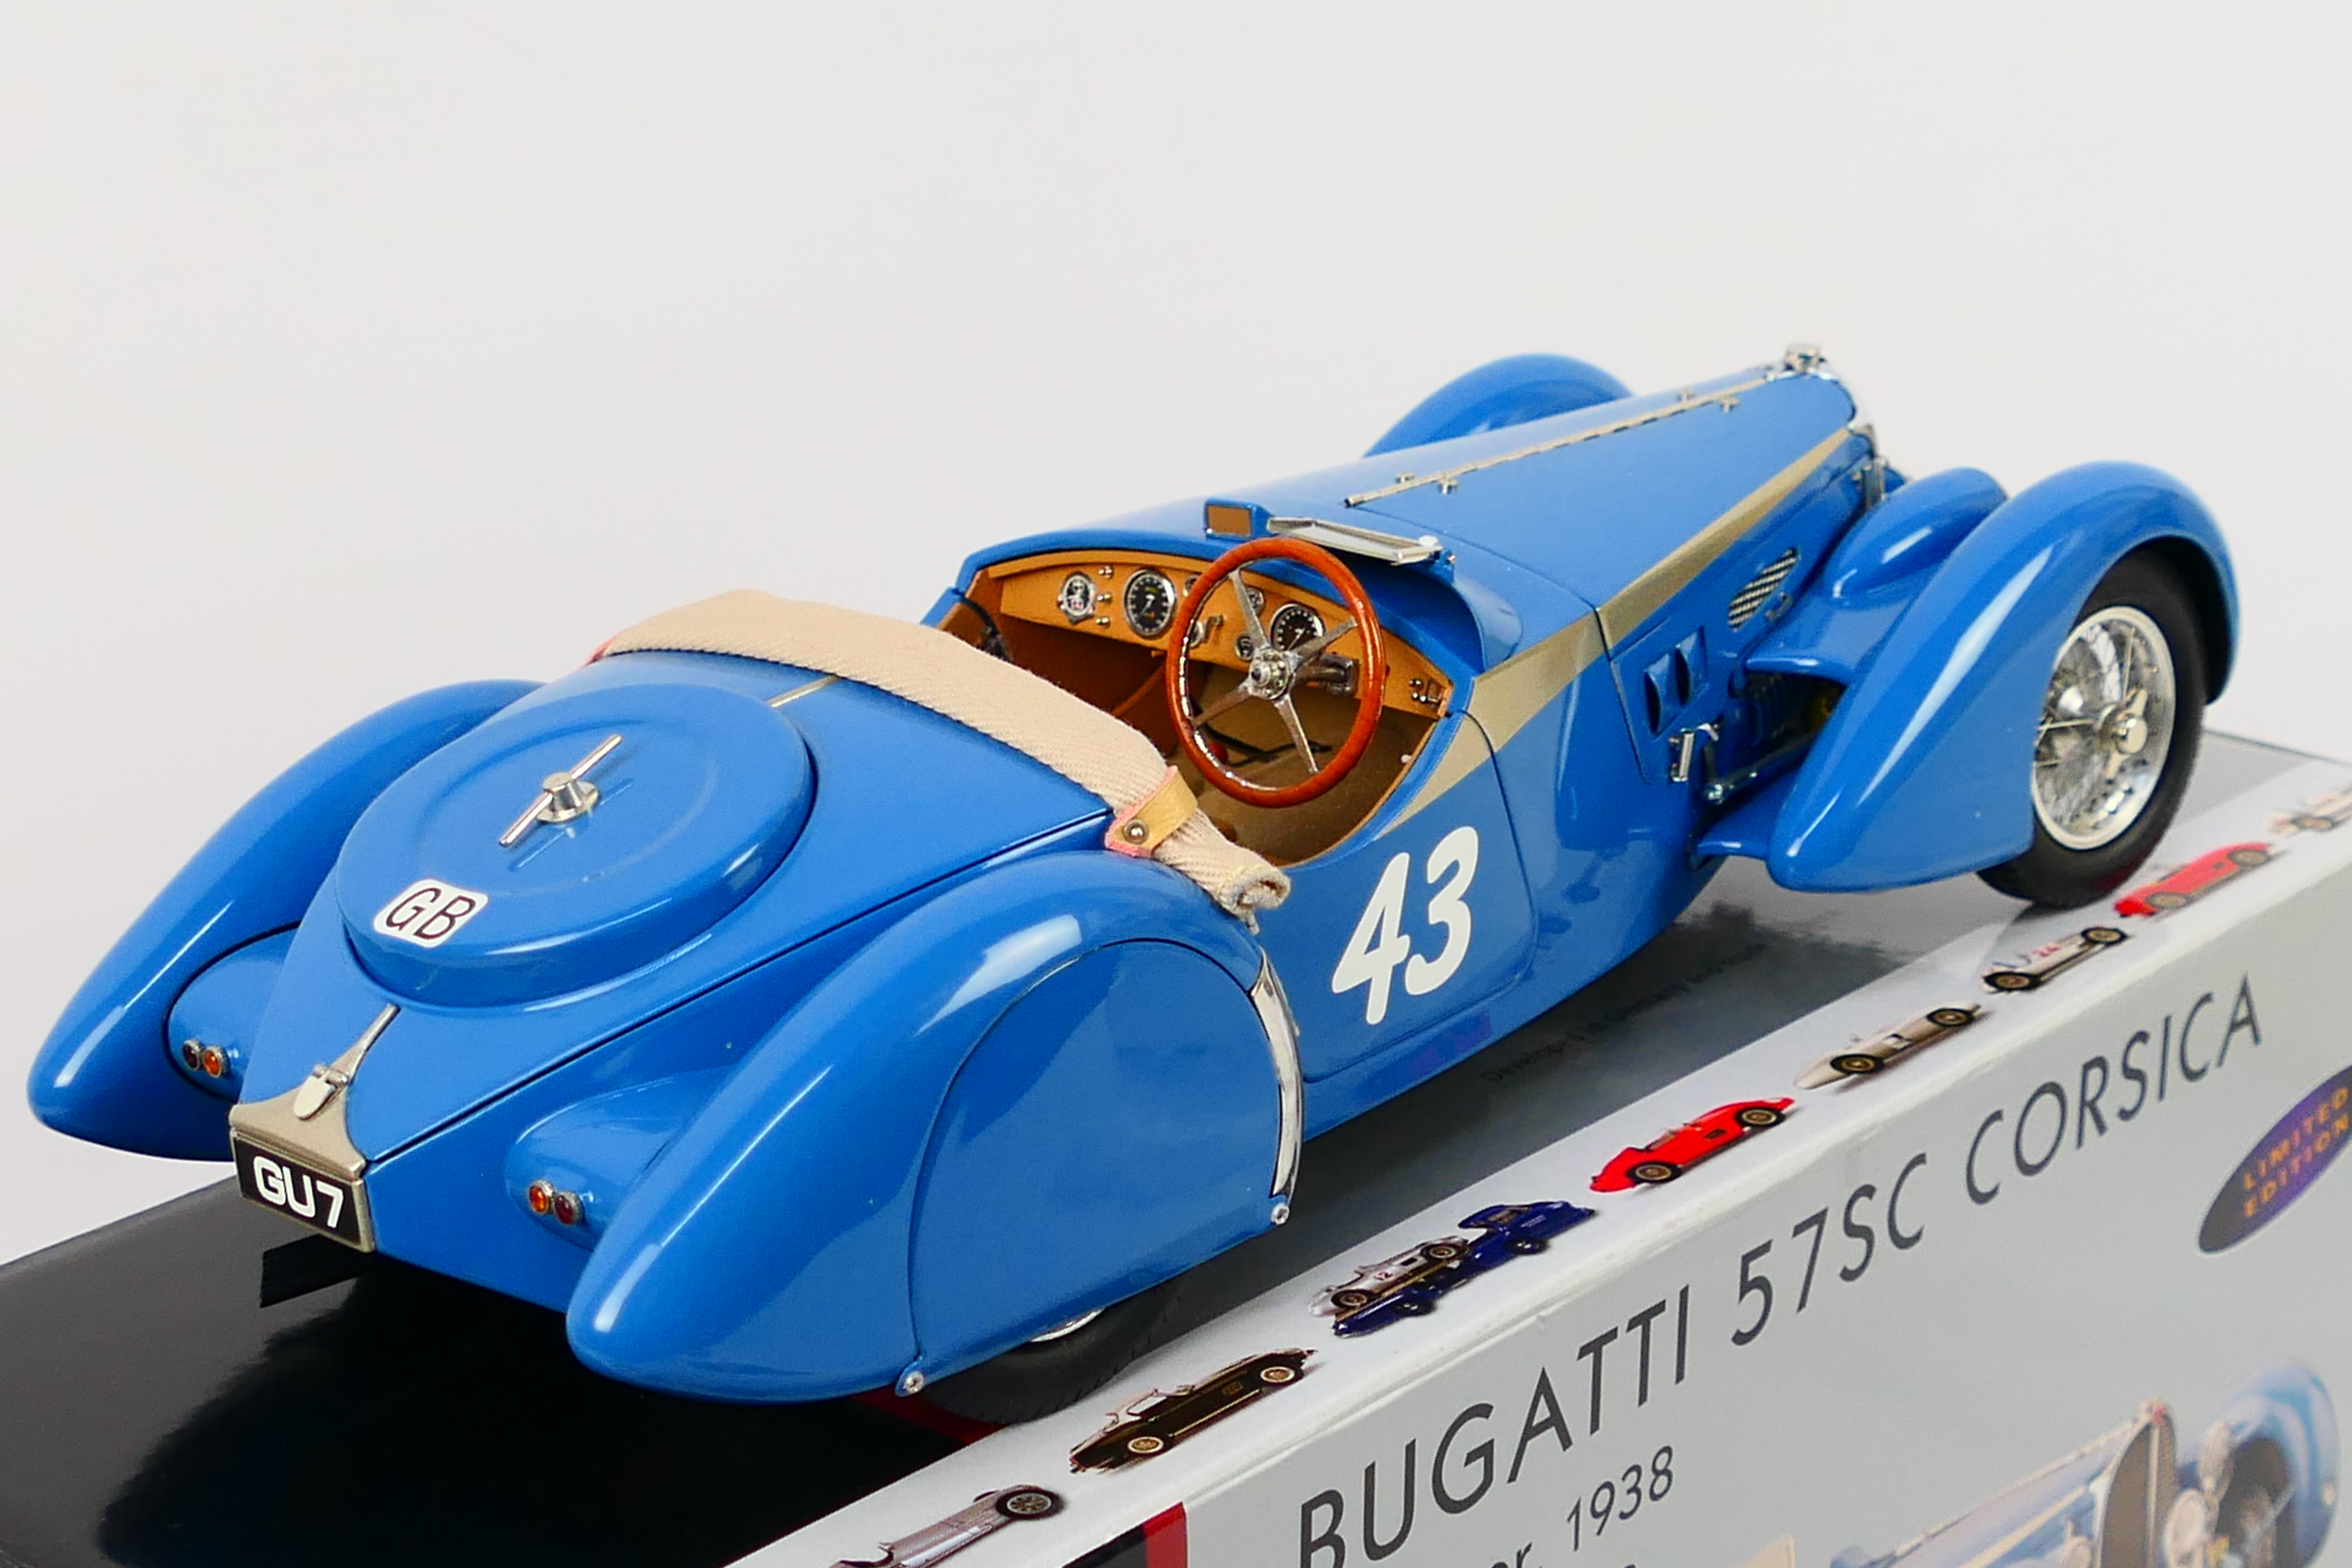 CMC - A limited edition 1938 Bugatti 57 SC Corsica in the rare Roadster Sport finish in 1:18 scale - Image 6 of 9